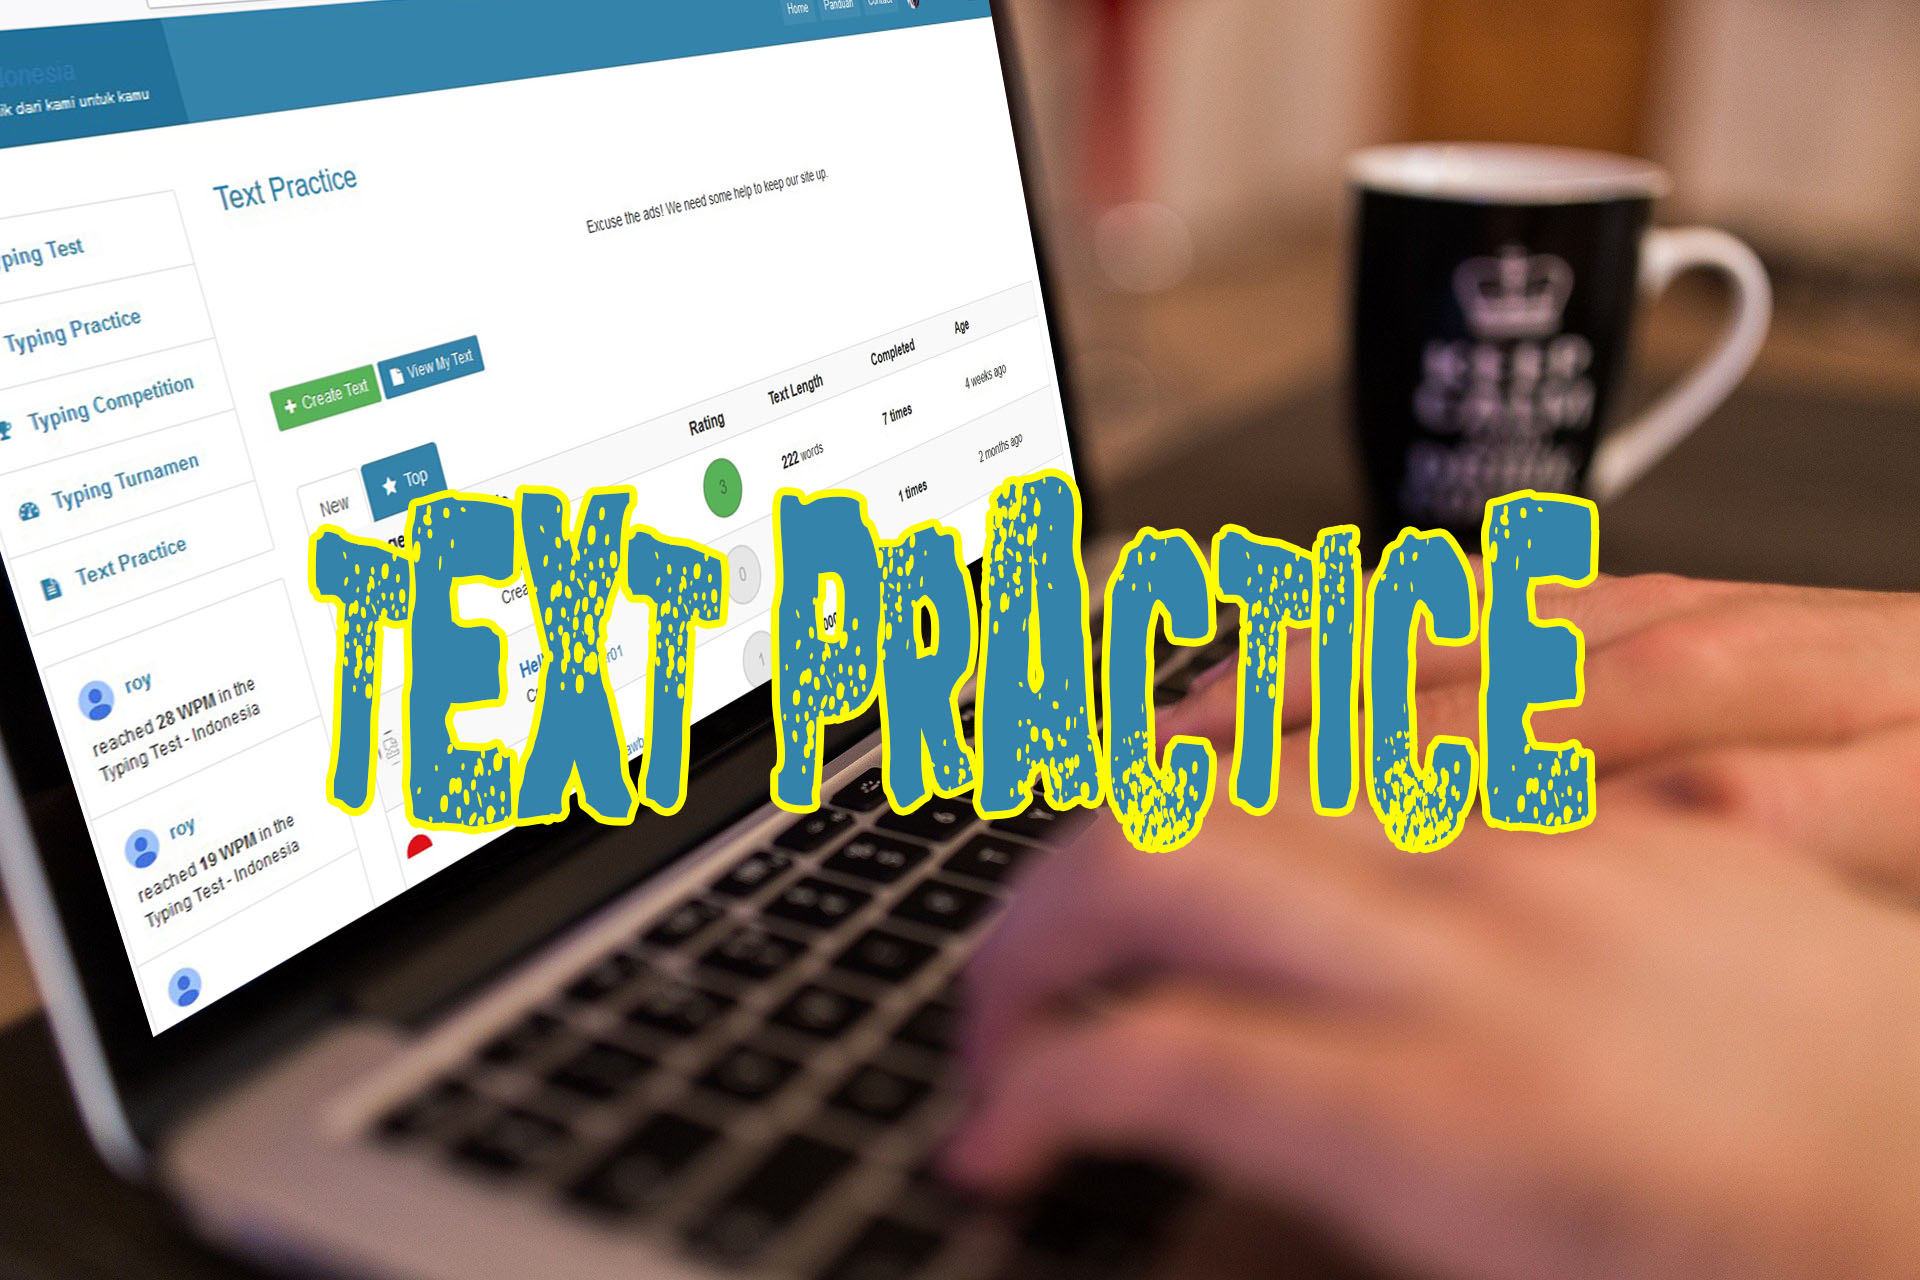 Text Practice